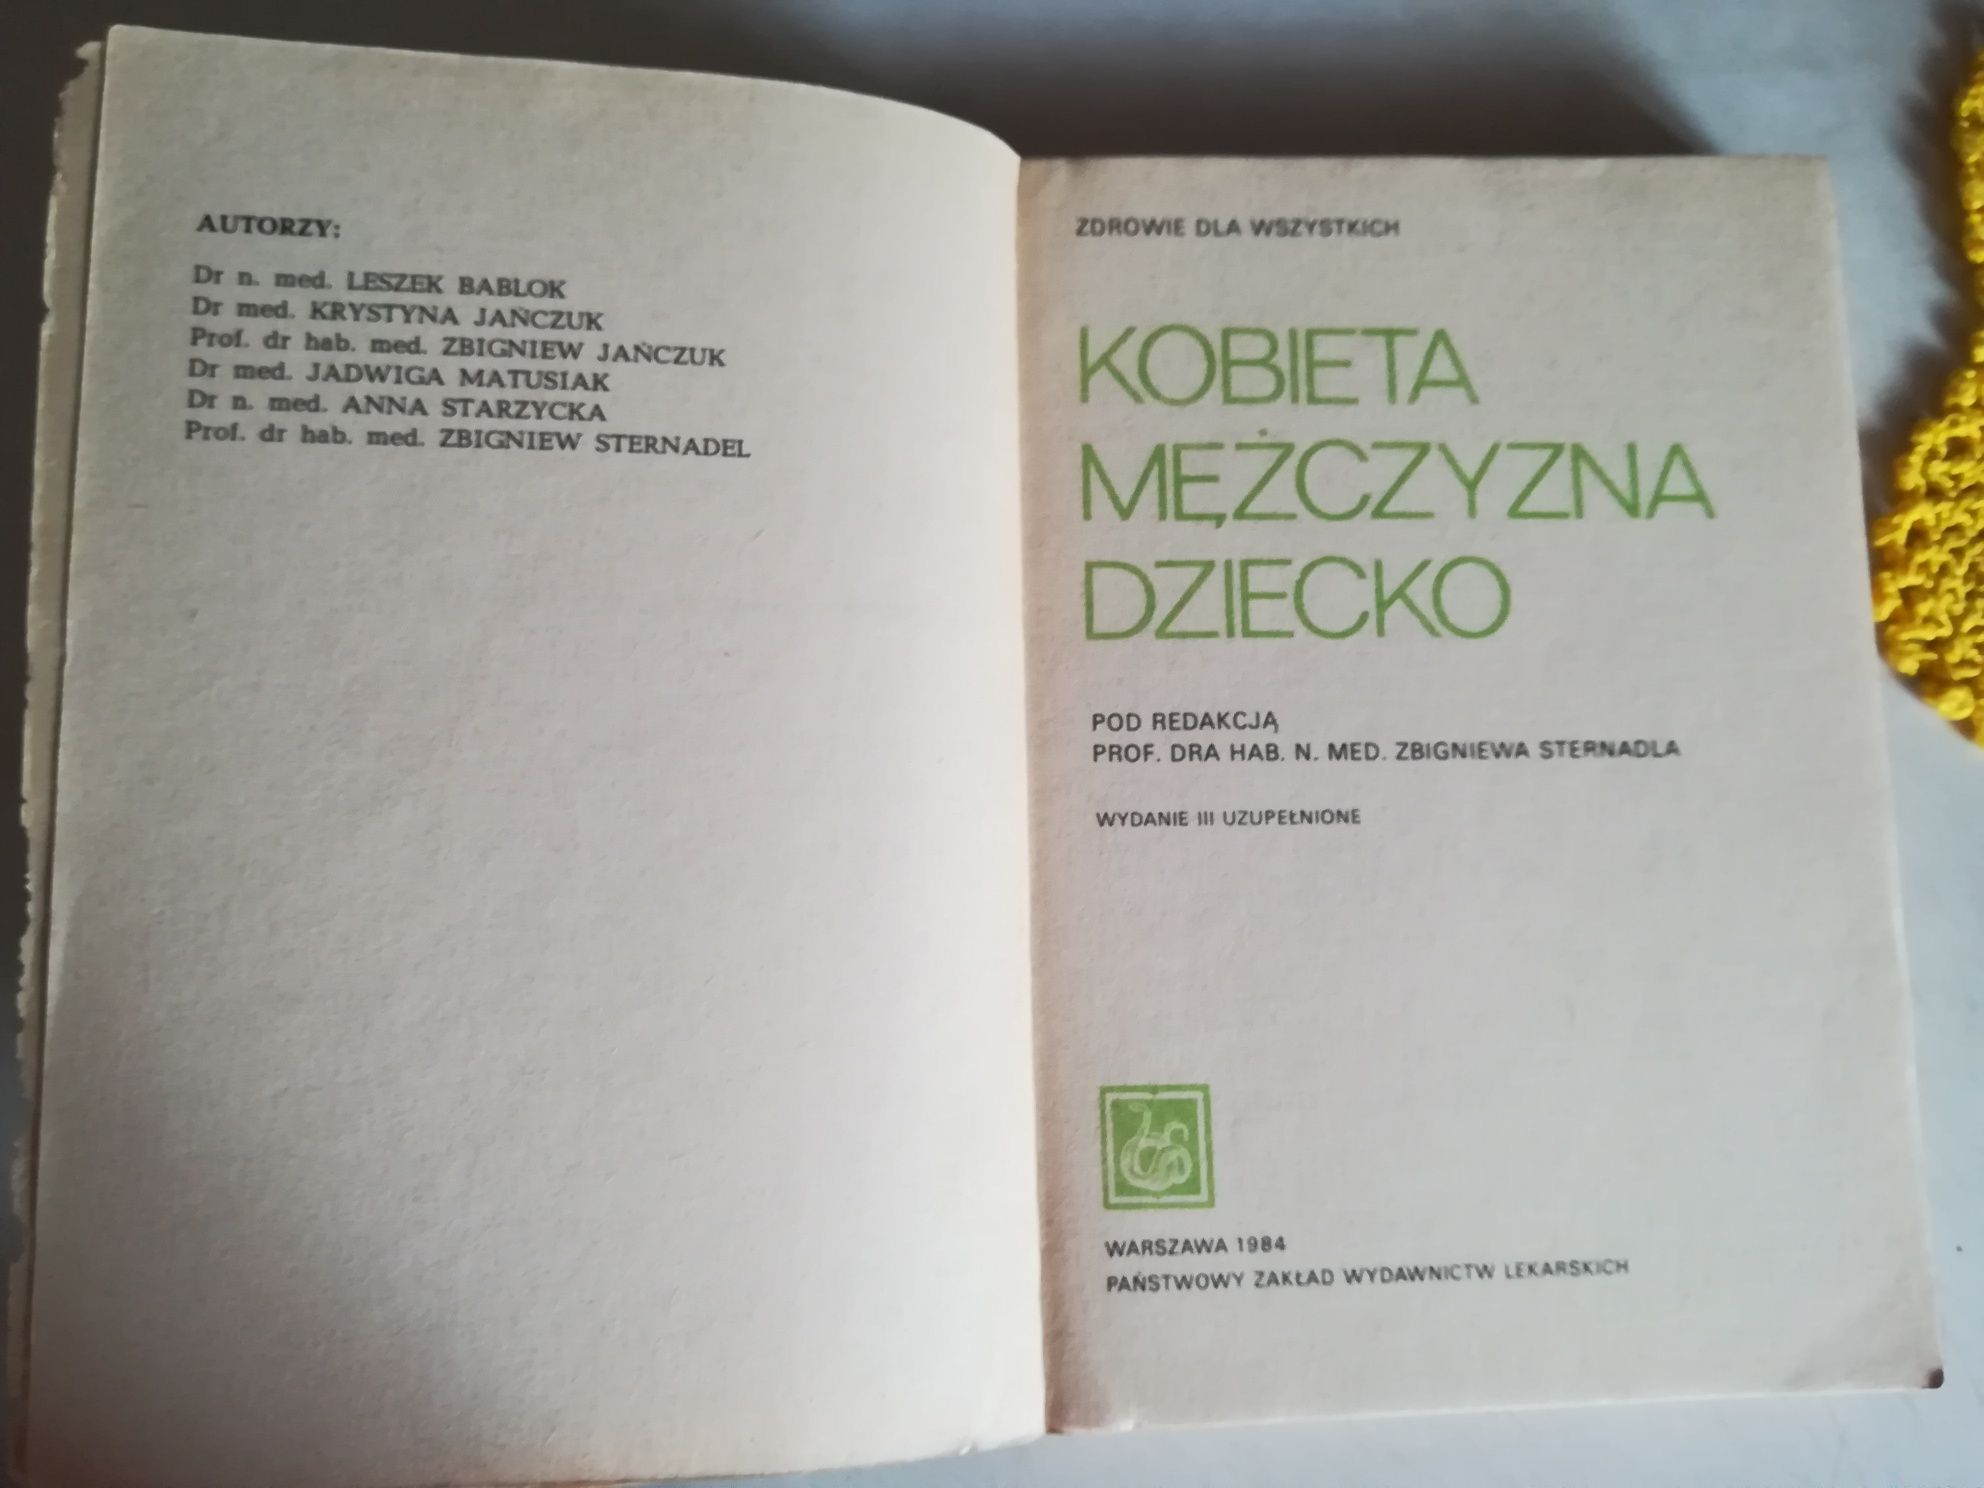 Książka - Kobieta mężczyzna dziecko - Zbigniew Sternadla - 1984 rok